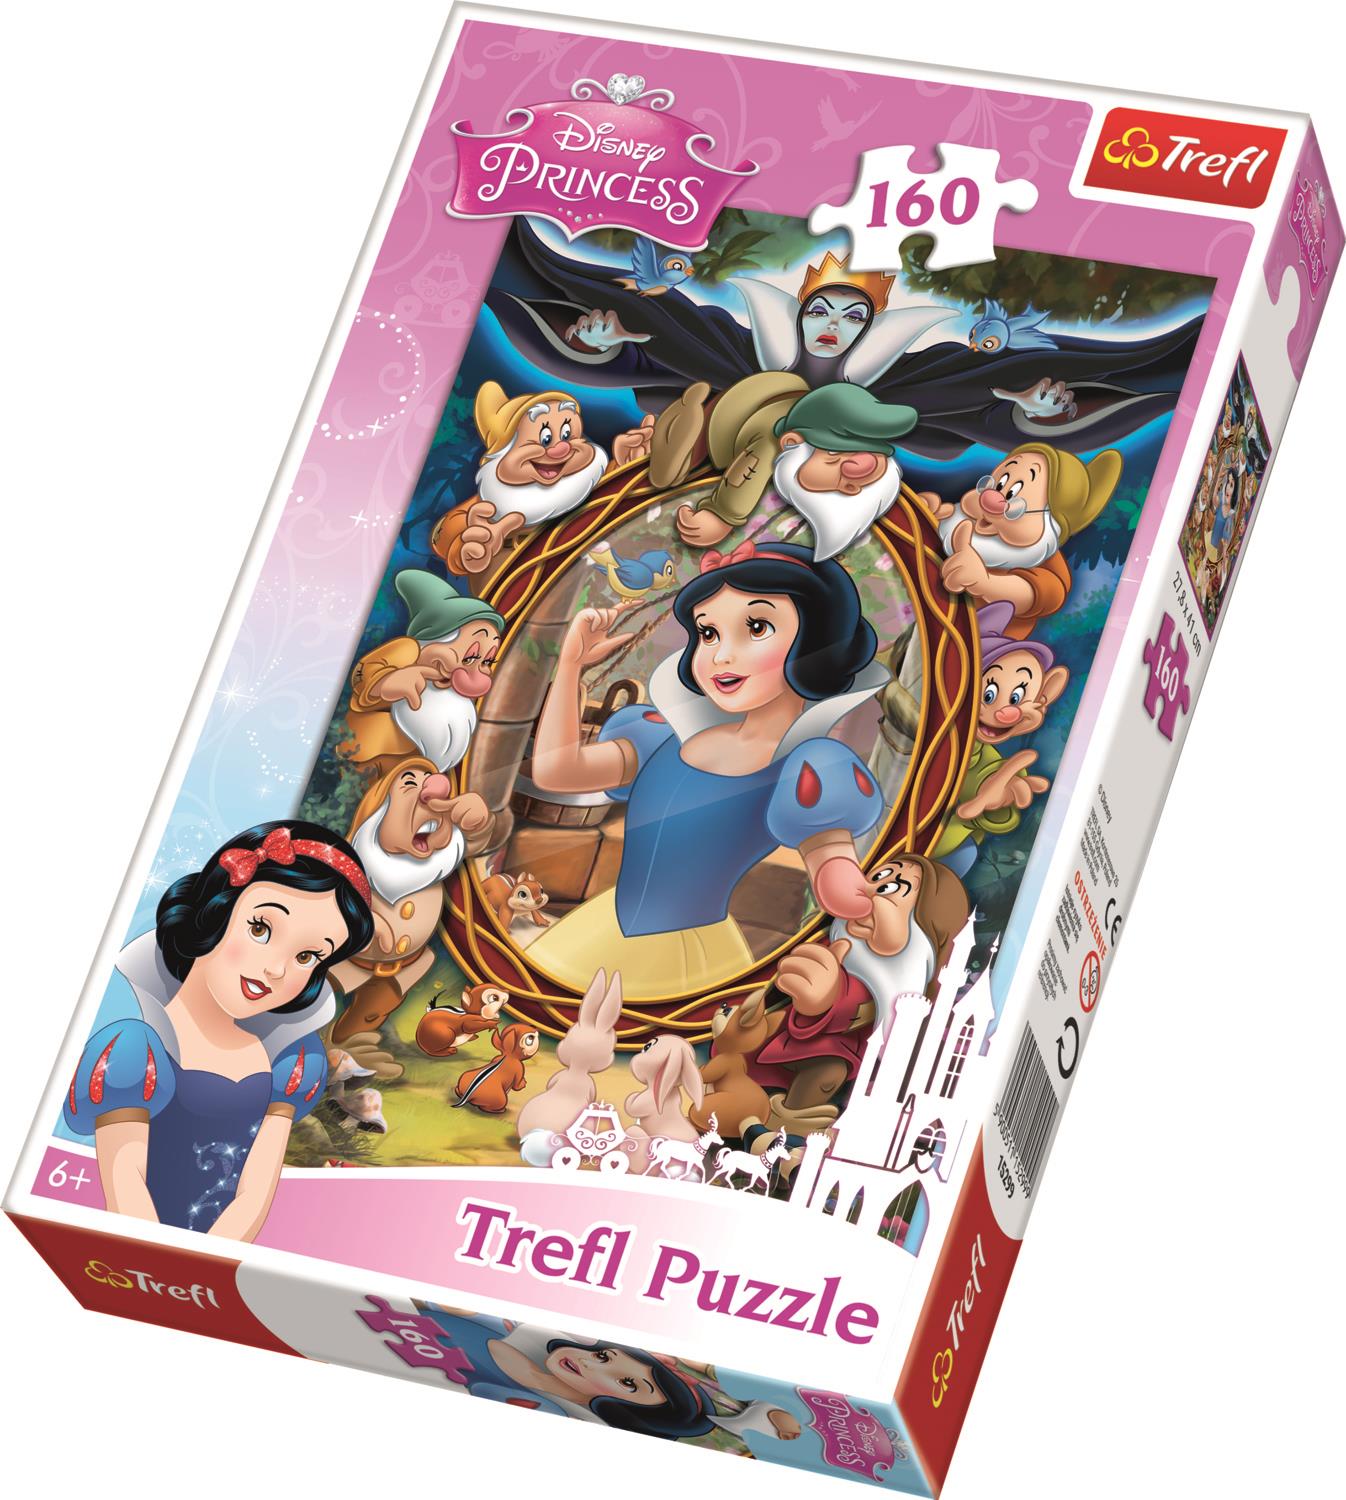 Trefl Çocuk Puzzle 15299 Princess Snow White Collage, Disney 160 Parça Puzzle